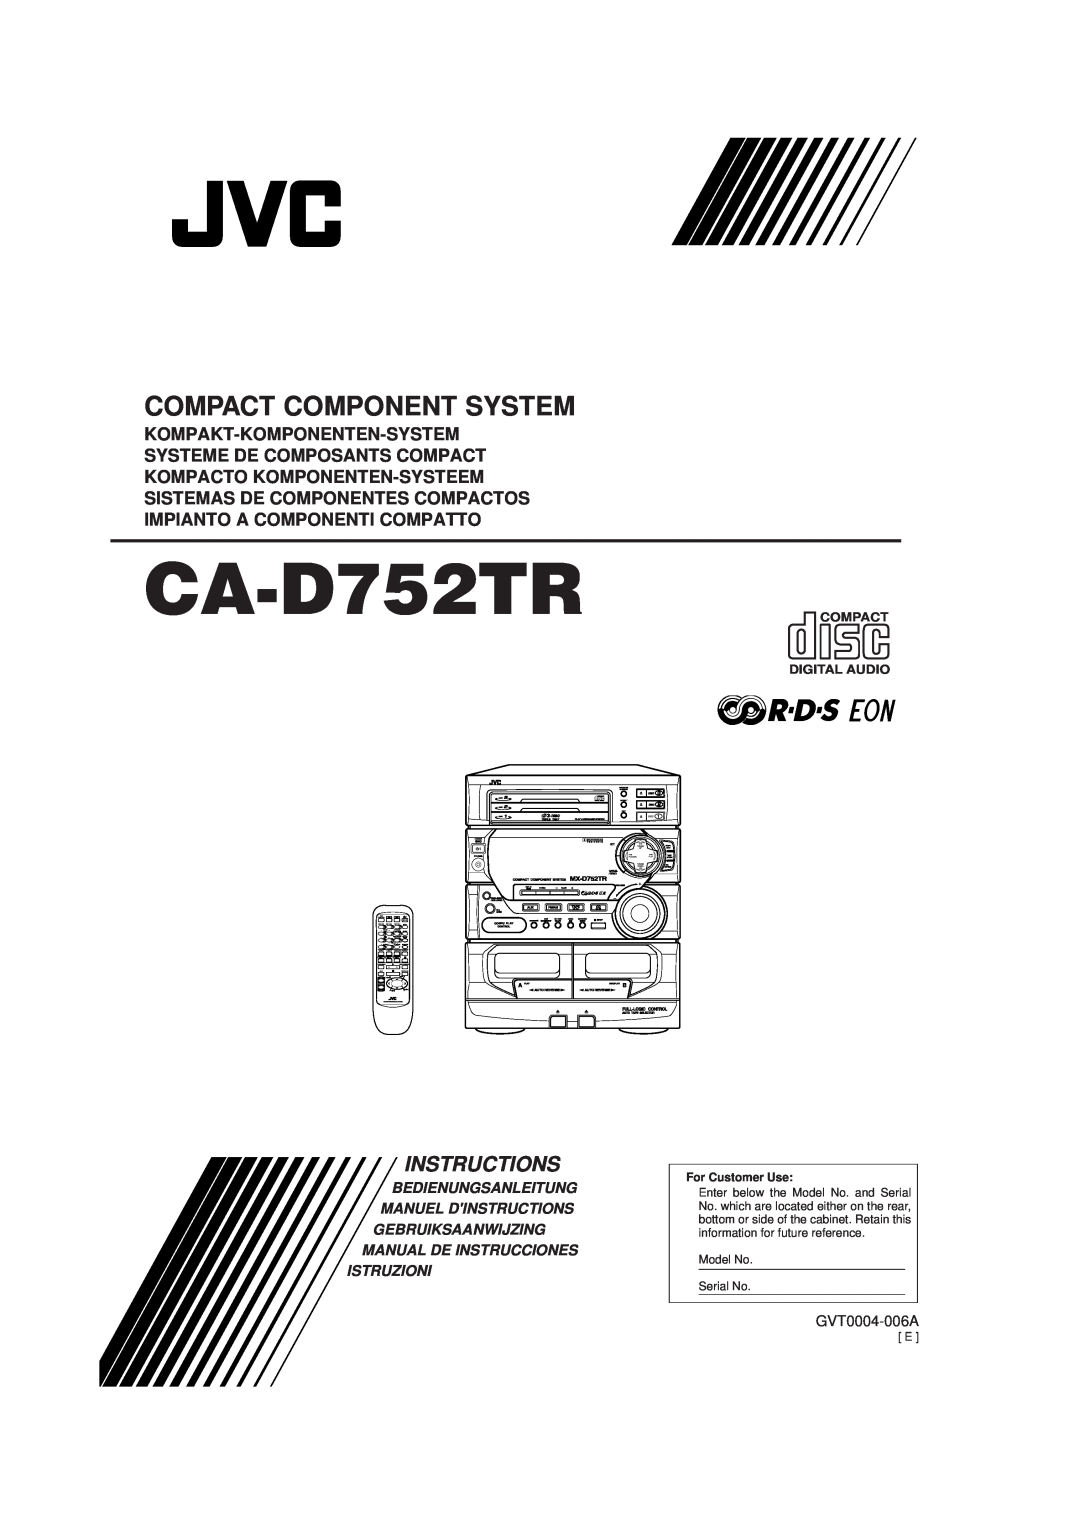 JVC CA-D752TR manual Compact Component System, Kompakt-Komponenten-System, Systeme De Composants Compact, Instructions 